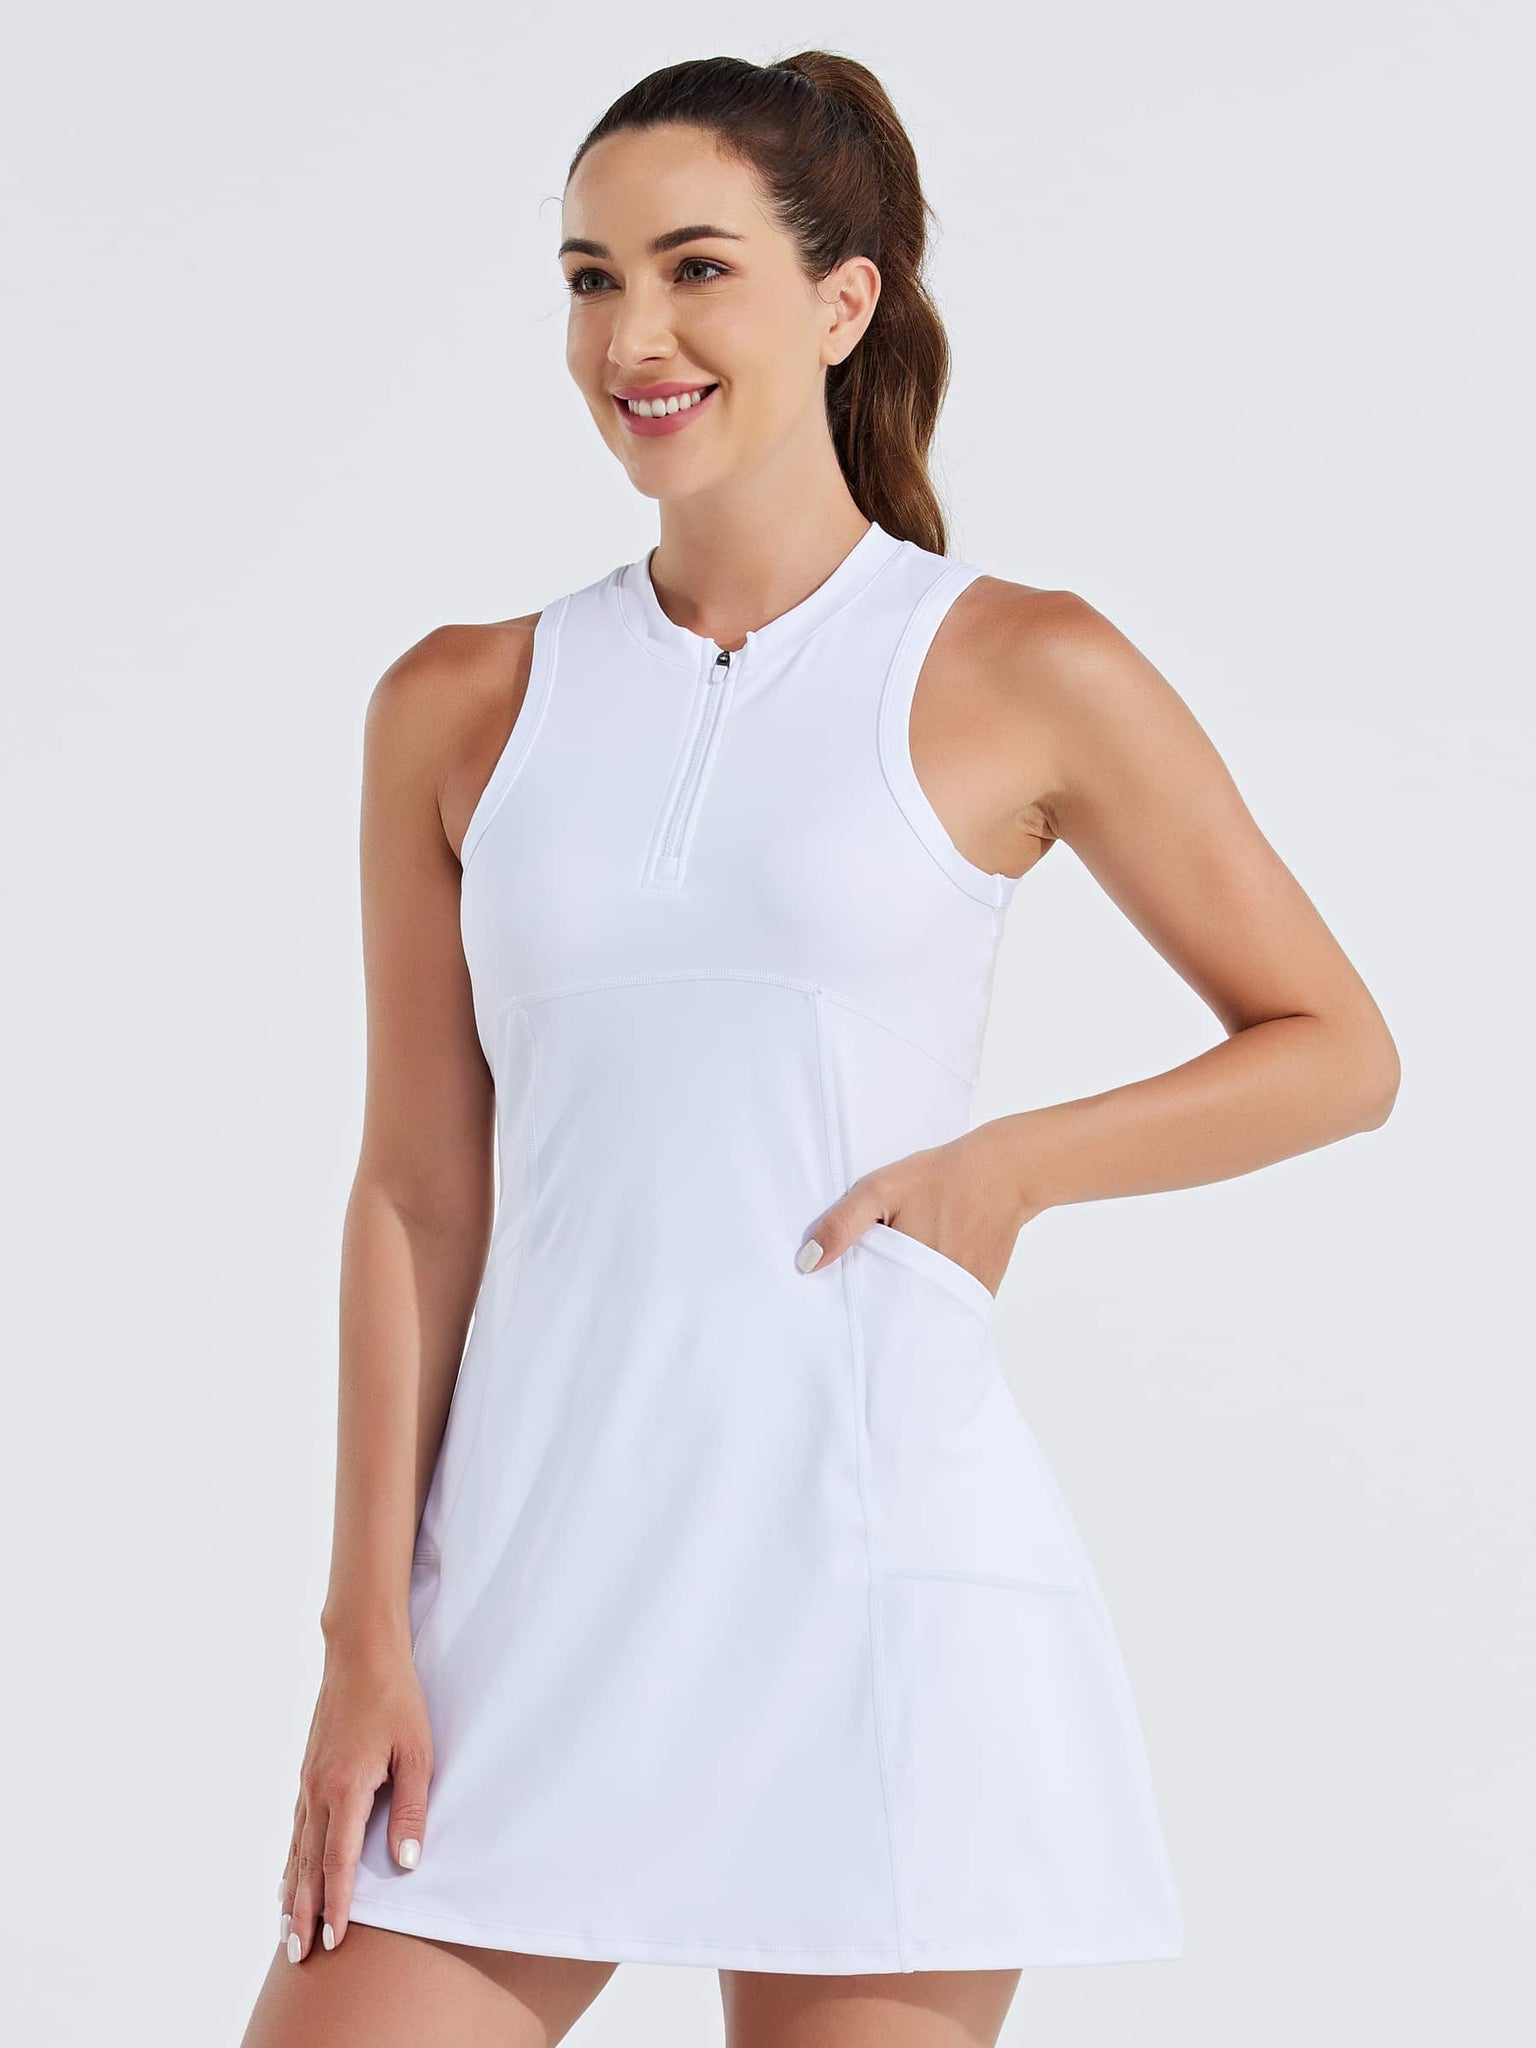 Women's Tennis Golf Dress Sleeveless Built-in Shorts